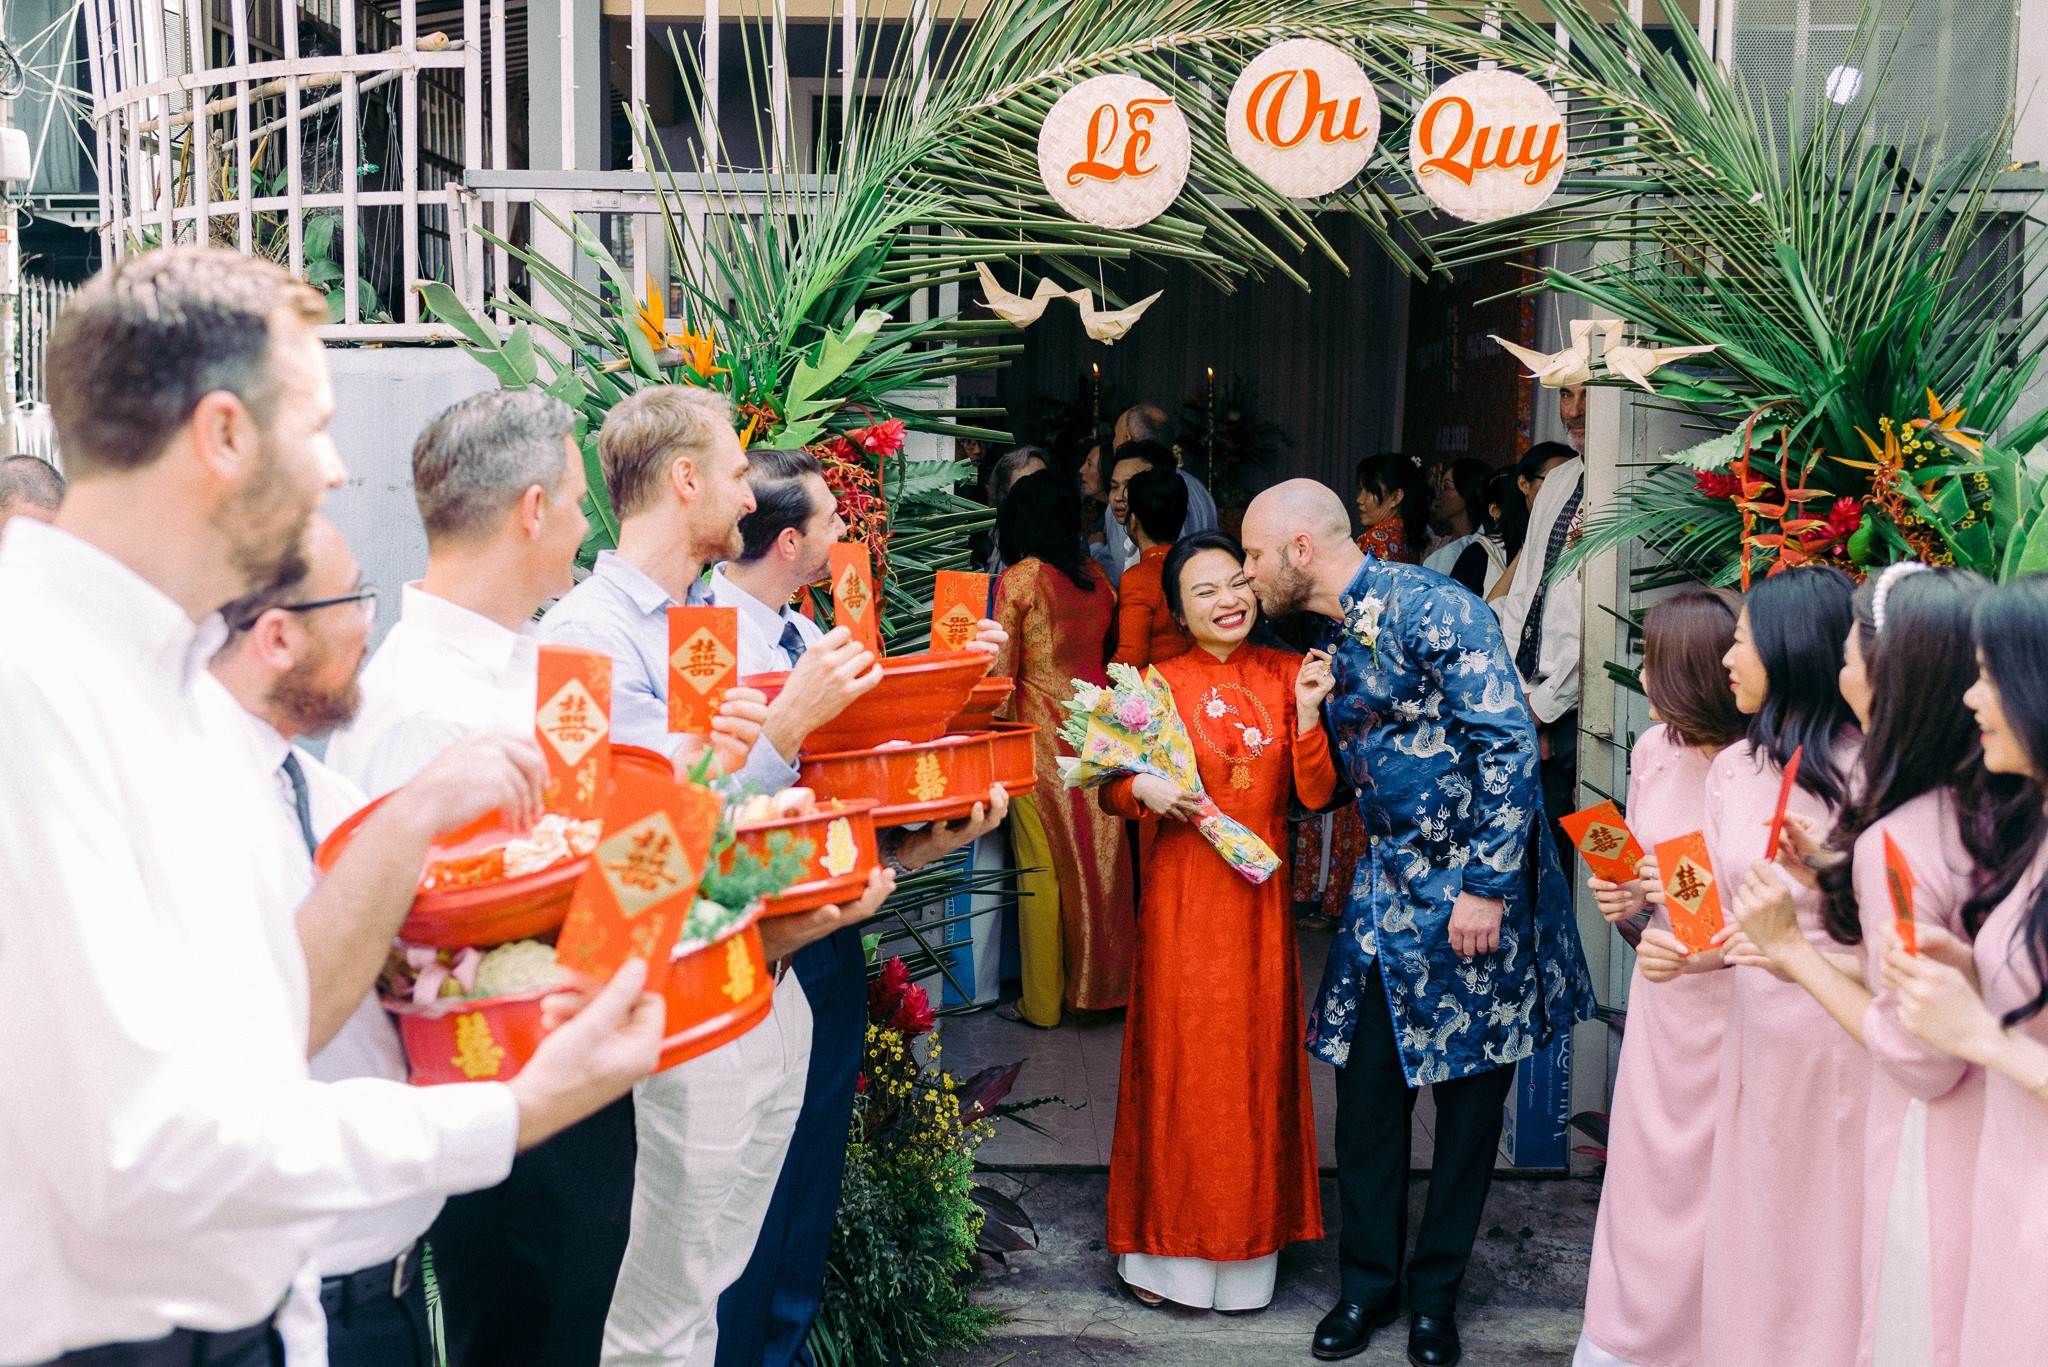 Đám cưới cây nhà lá vườn của vợ Việt, chồng Tây gây sốt mạng xã hội - 5